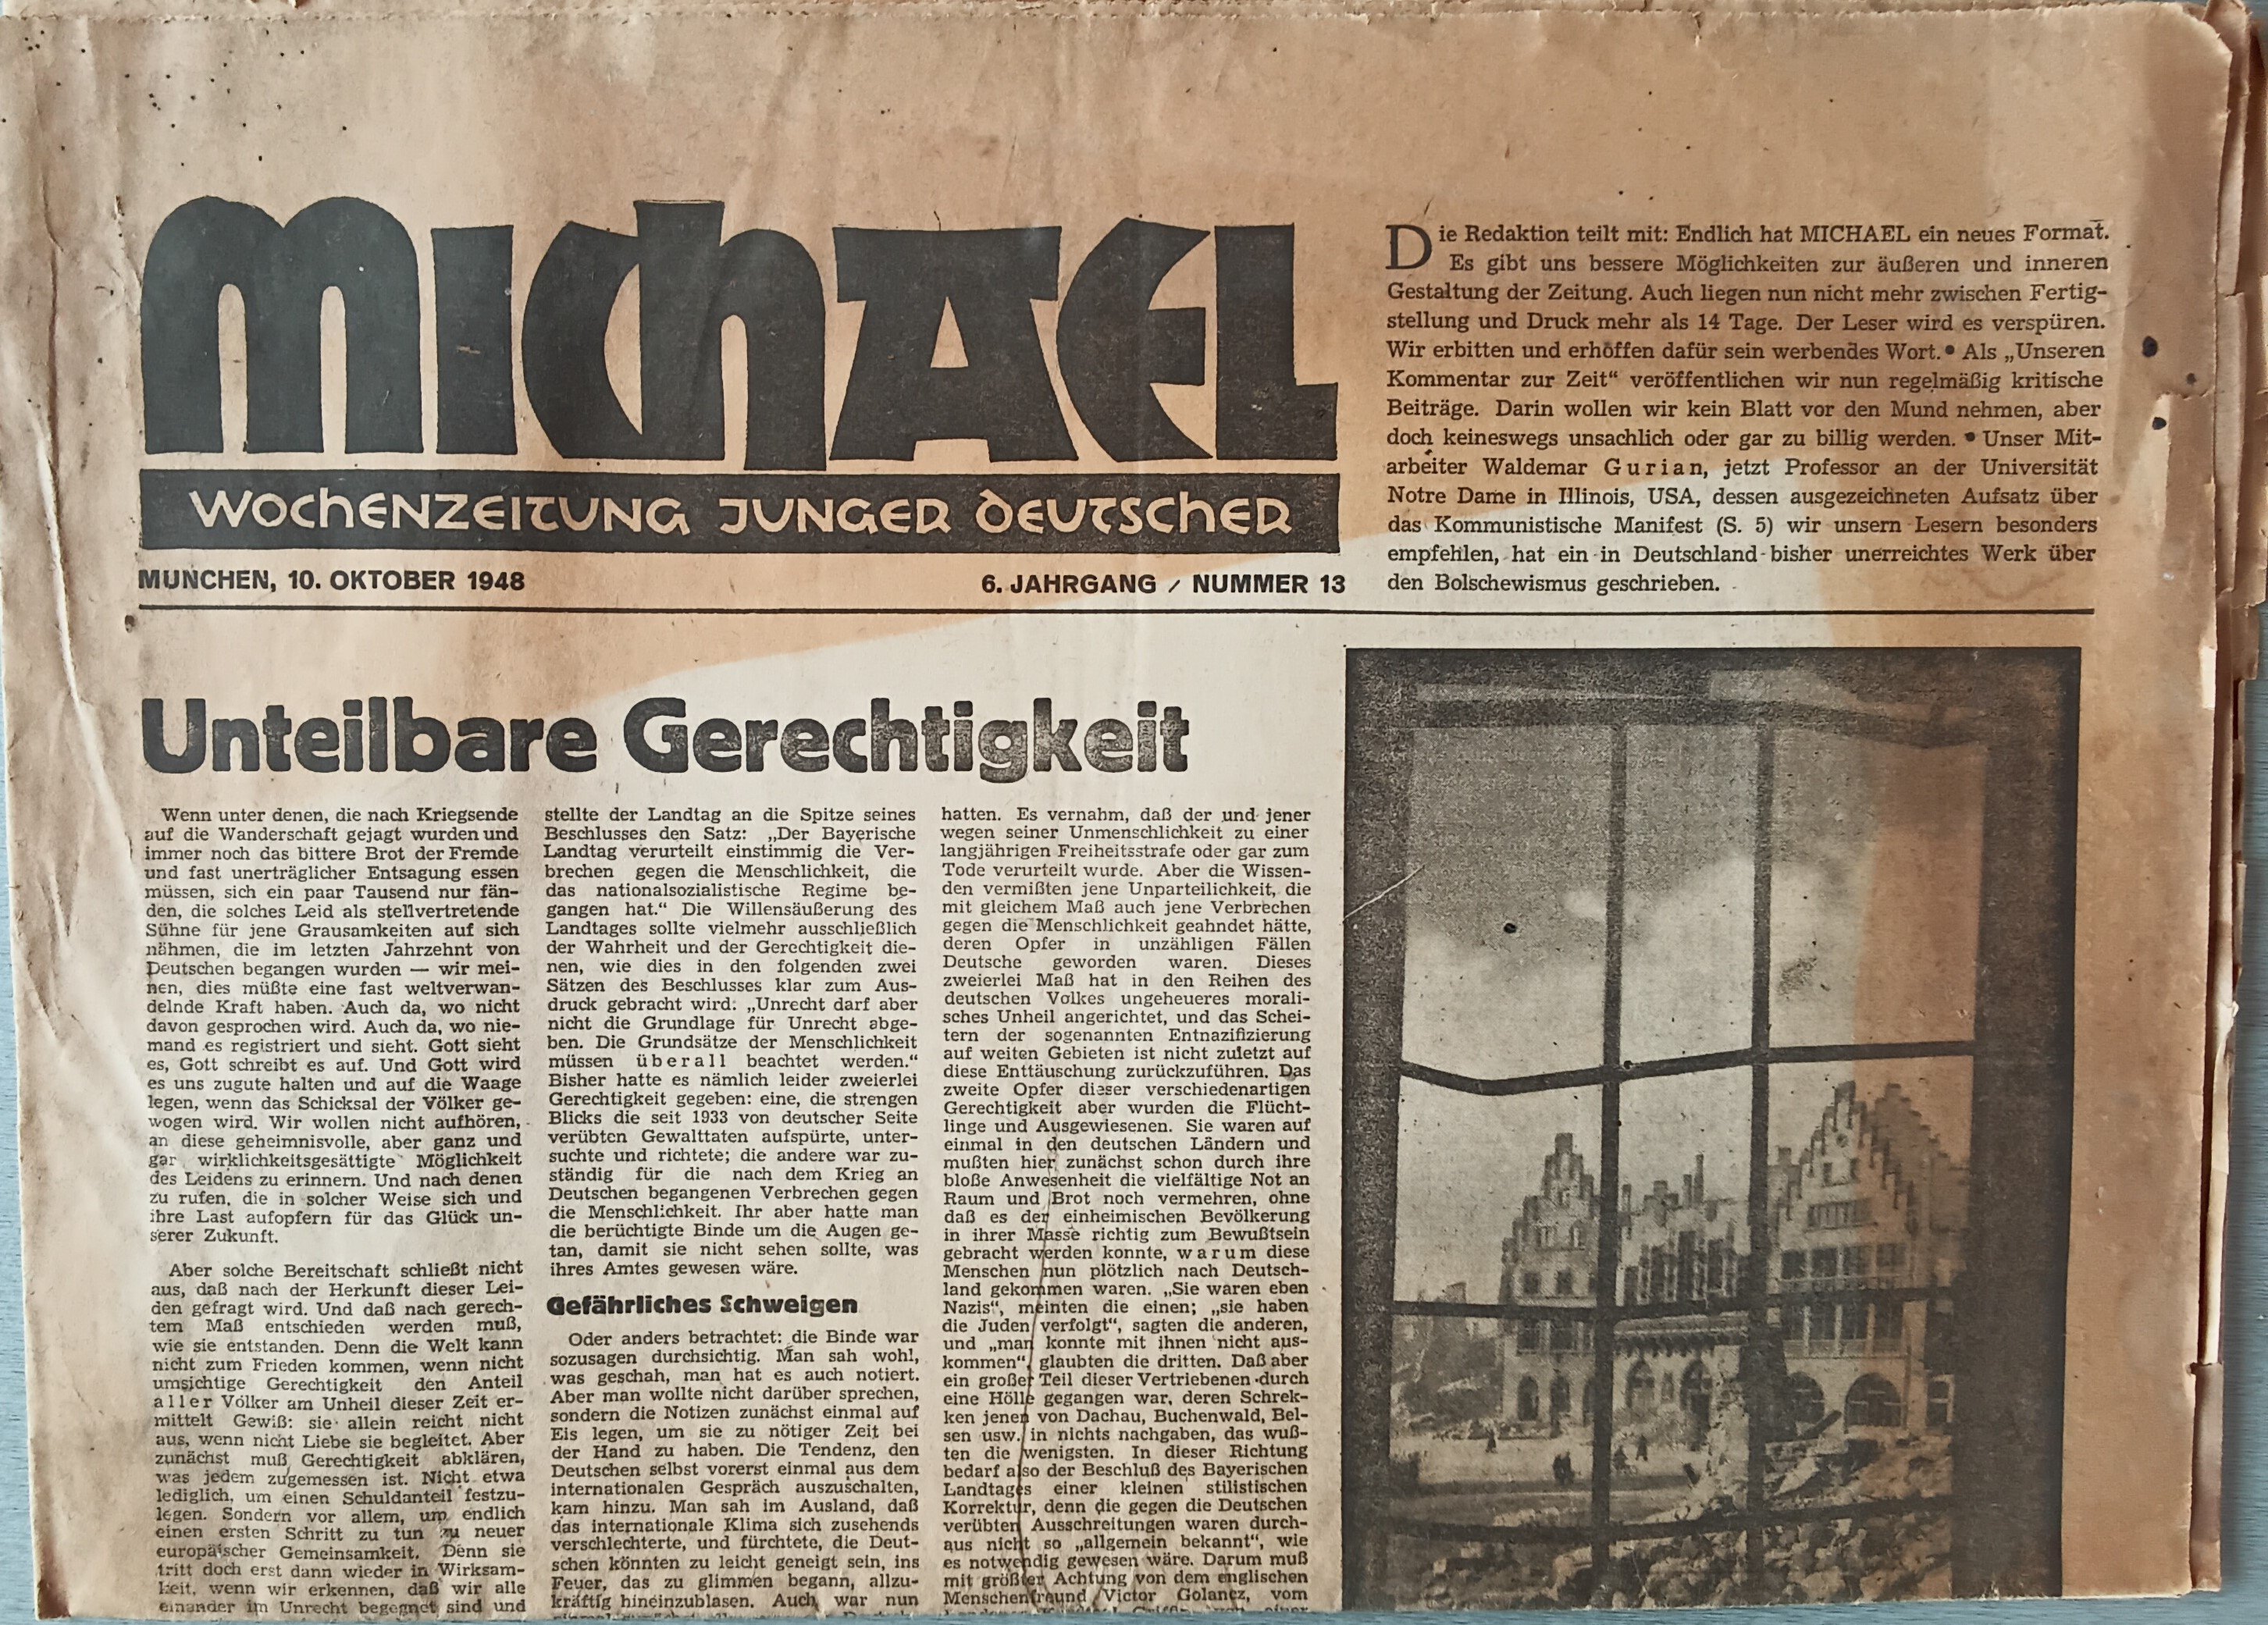 Michael Wochenzeitung junger Deutscher 10. Oktober 1948 (Heimatmuseum Aichstetten CC BY-NC-SA)